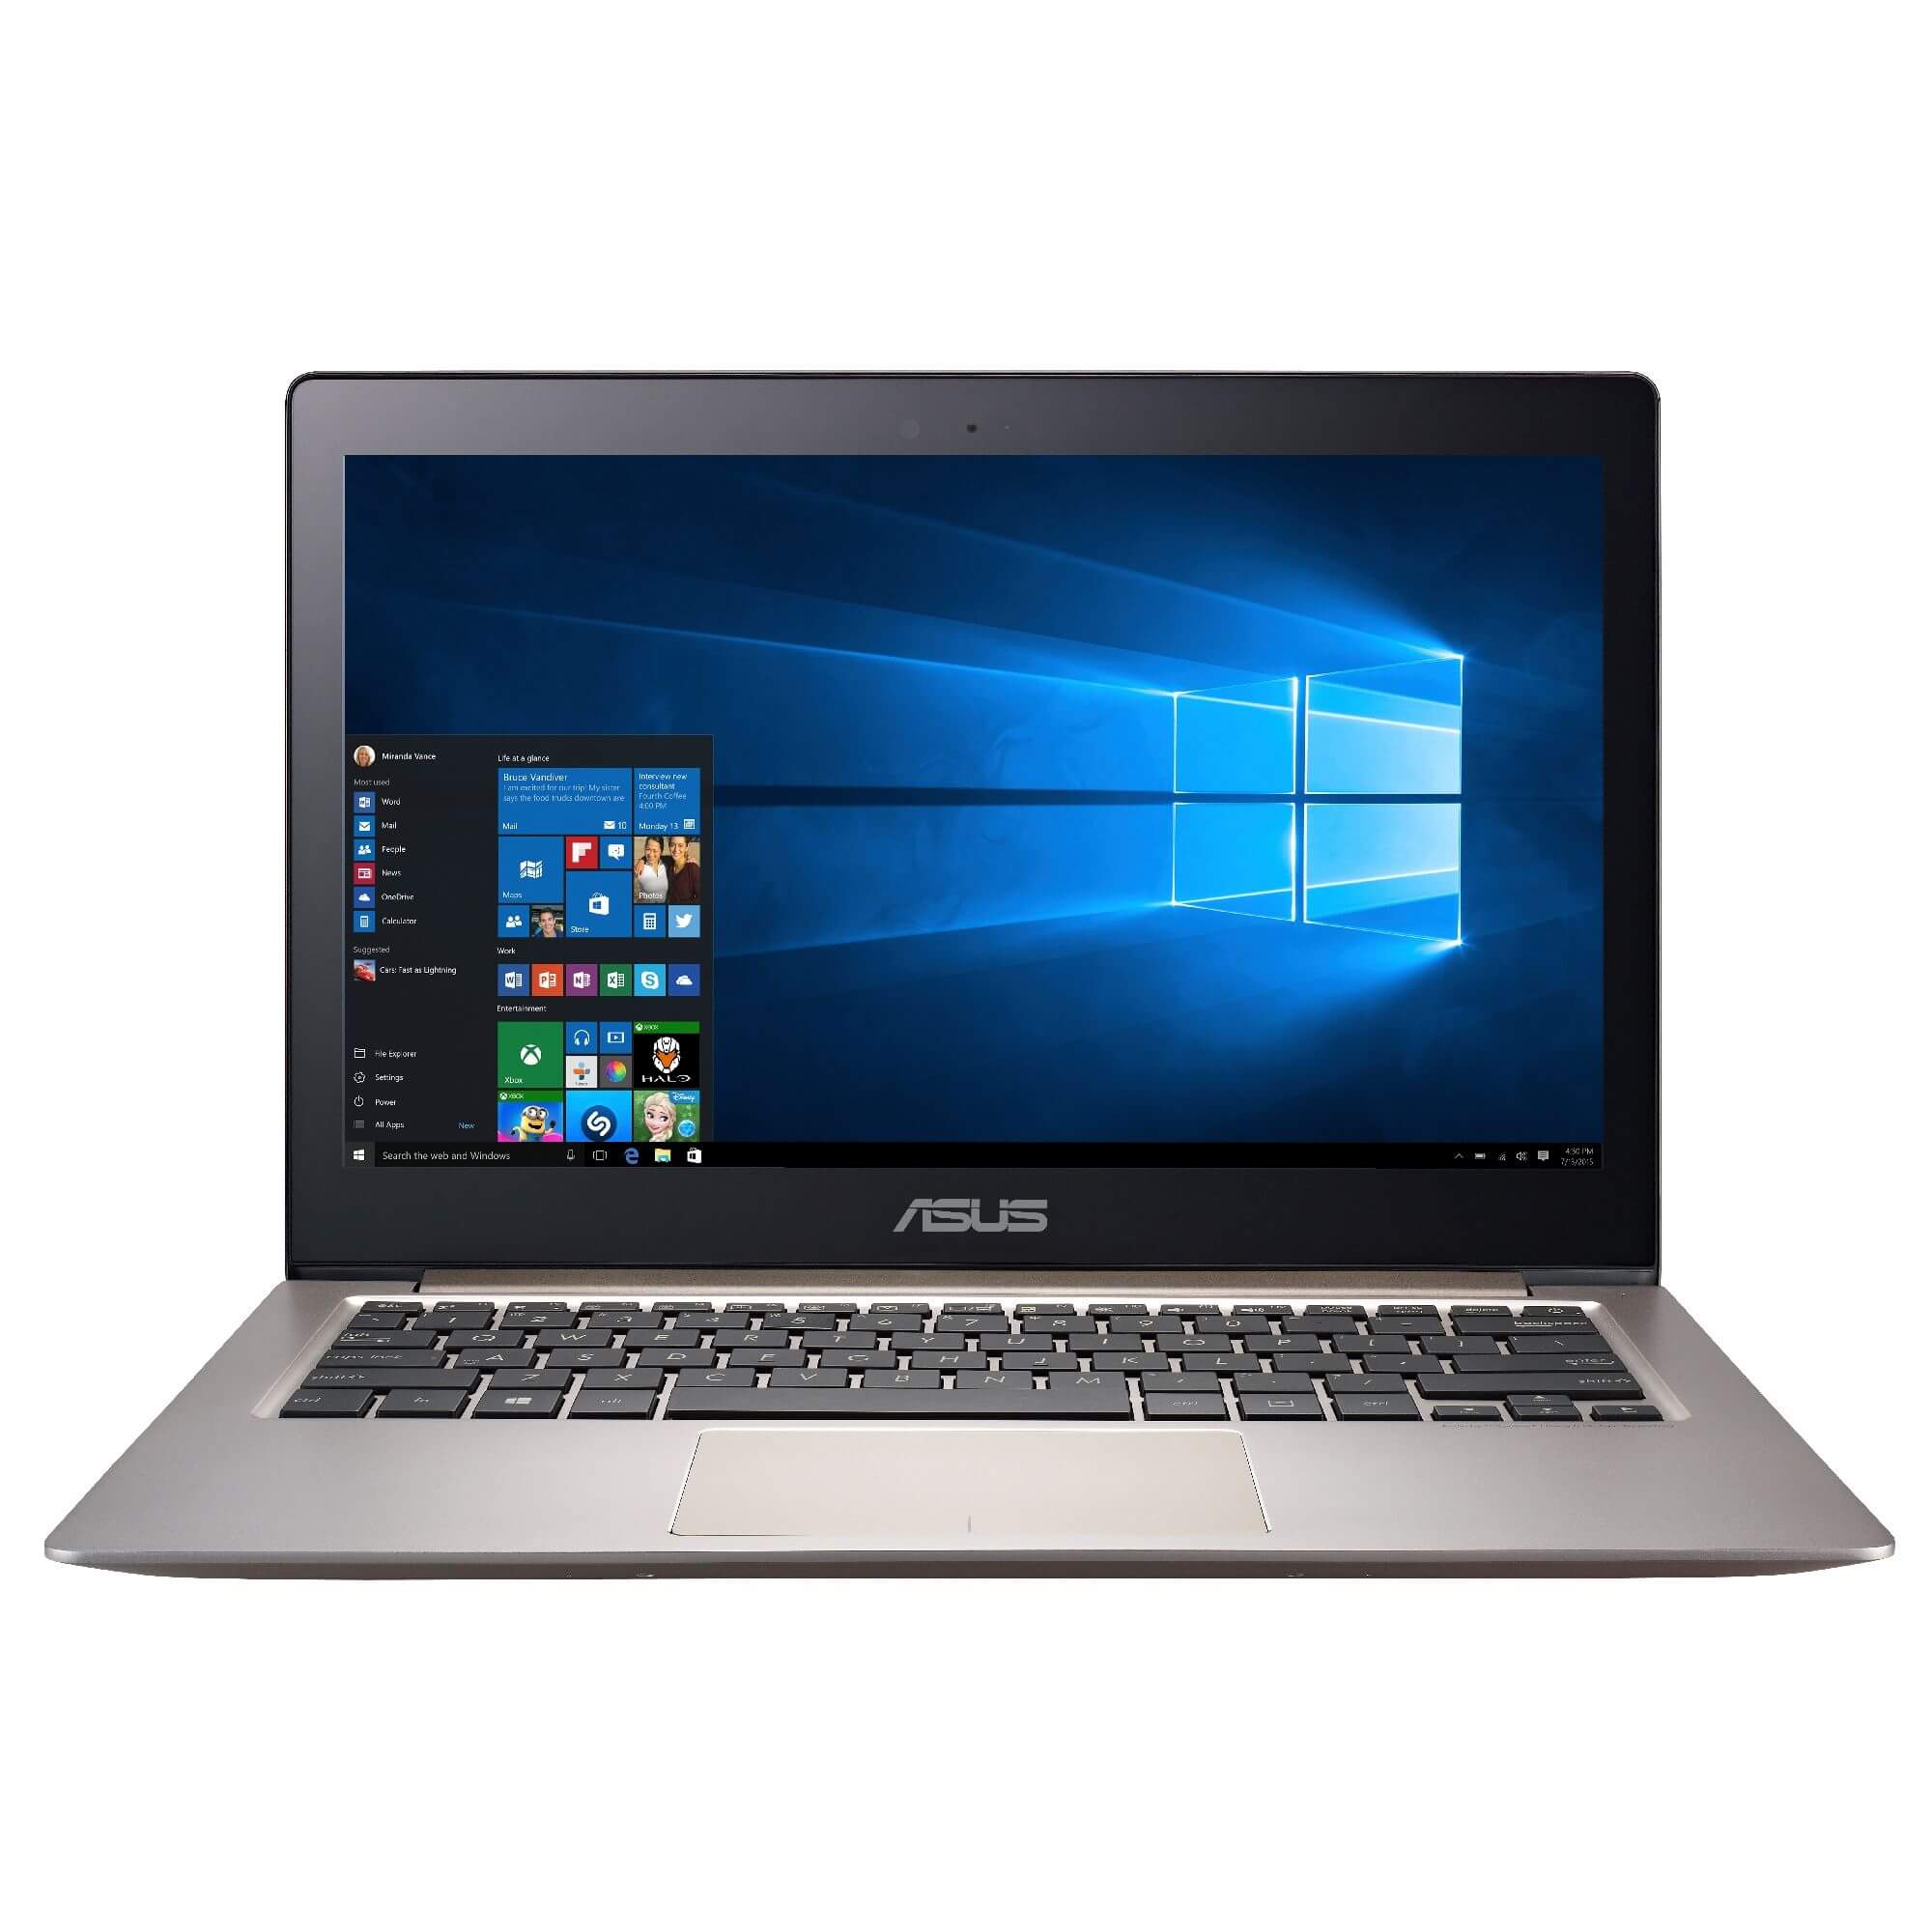  Laptop Asus UX303UA-C4045T, Intel Core i5-6200U, 8GB DDR3, SSD 128GB, Intel HD Graphics, Windows 10 